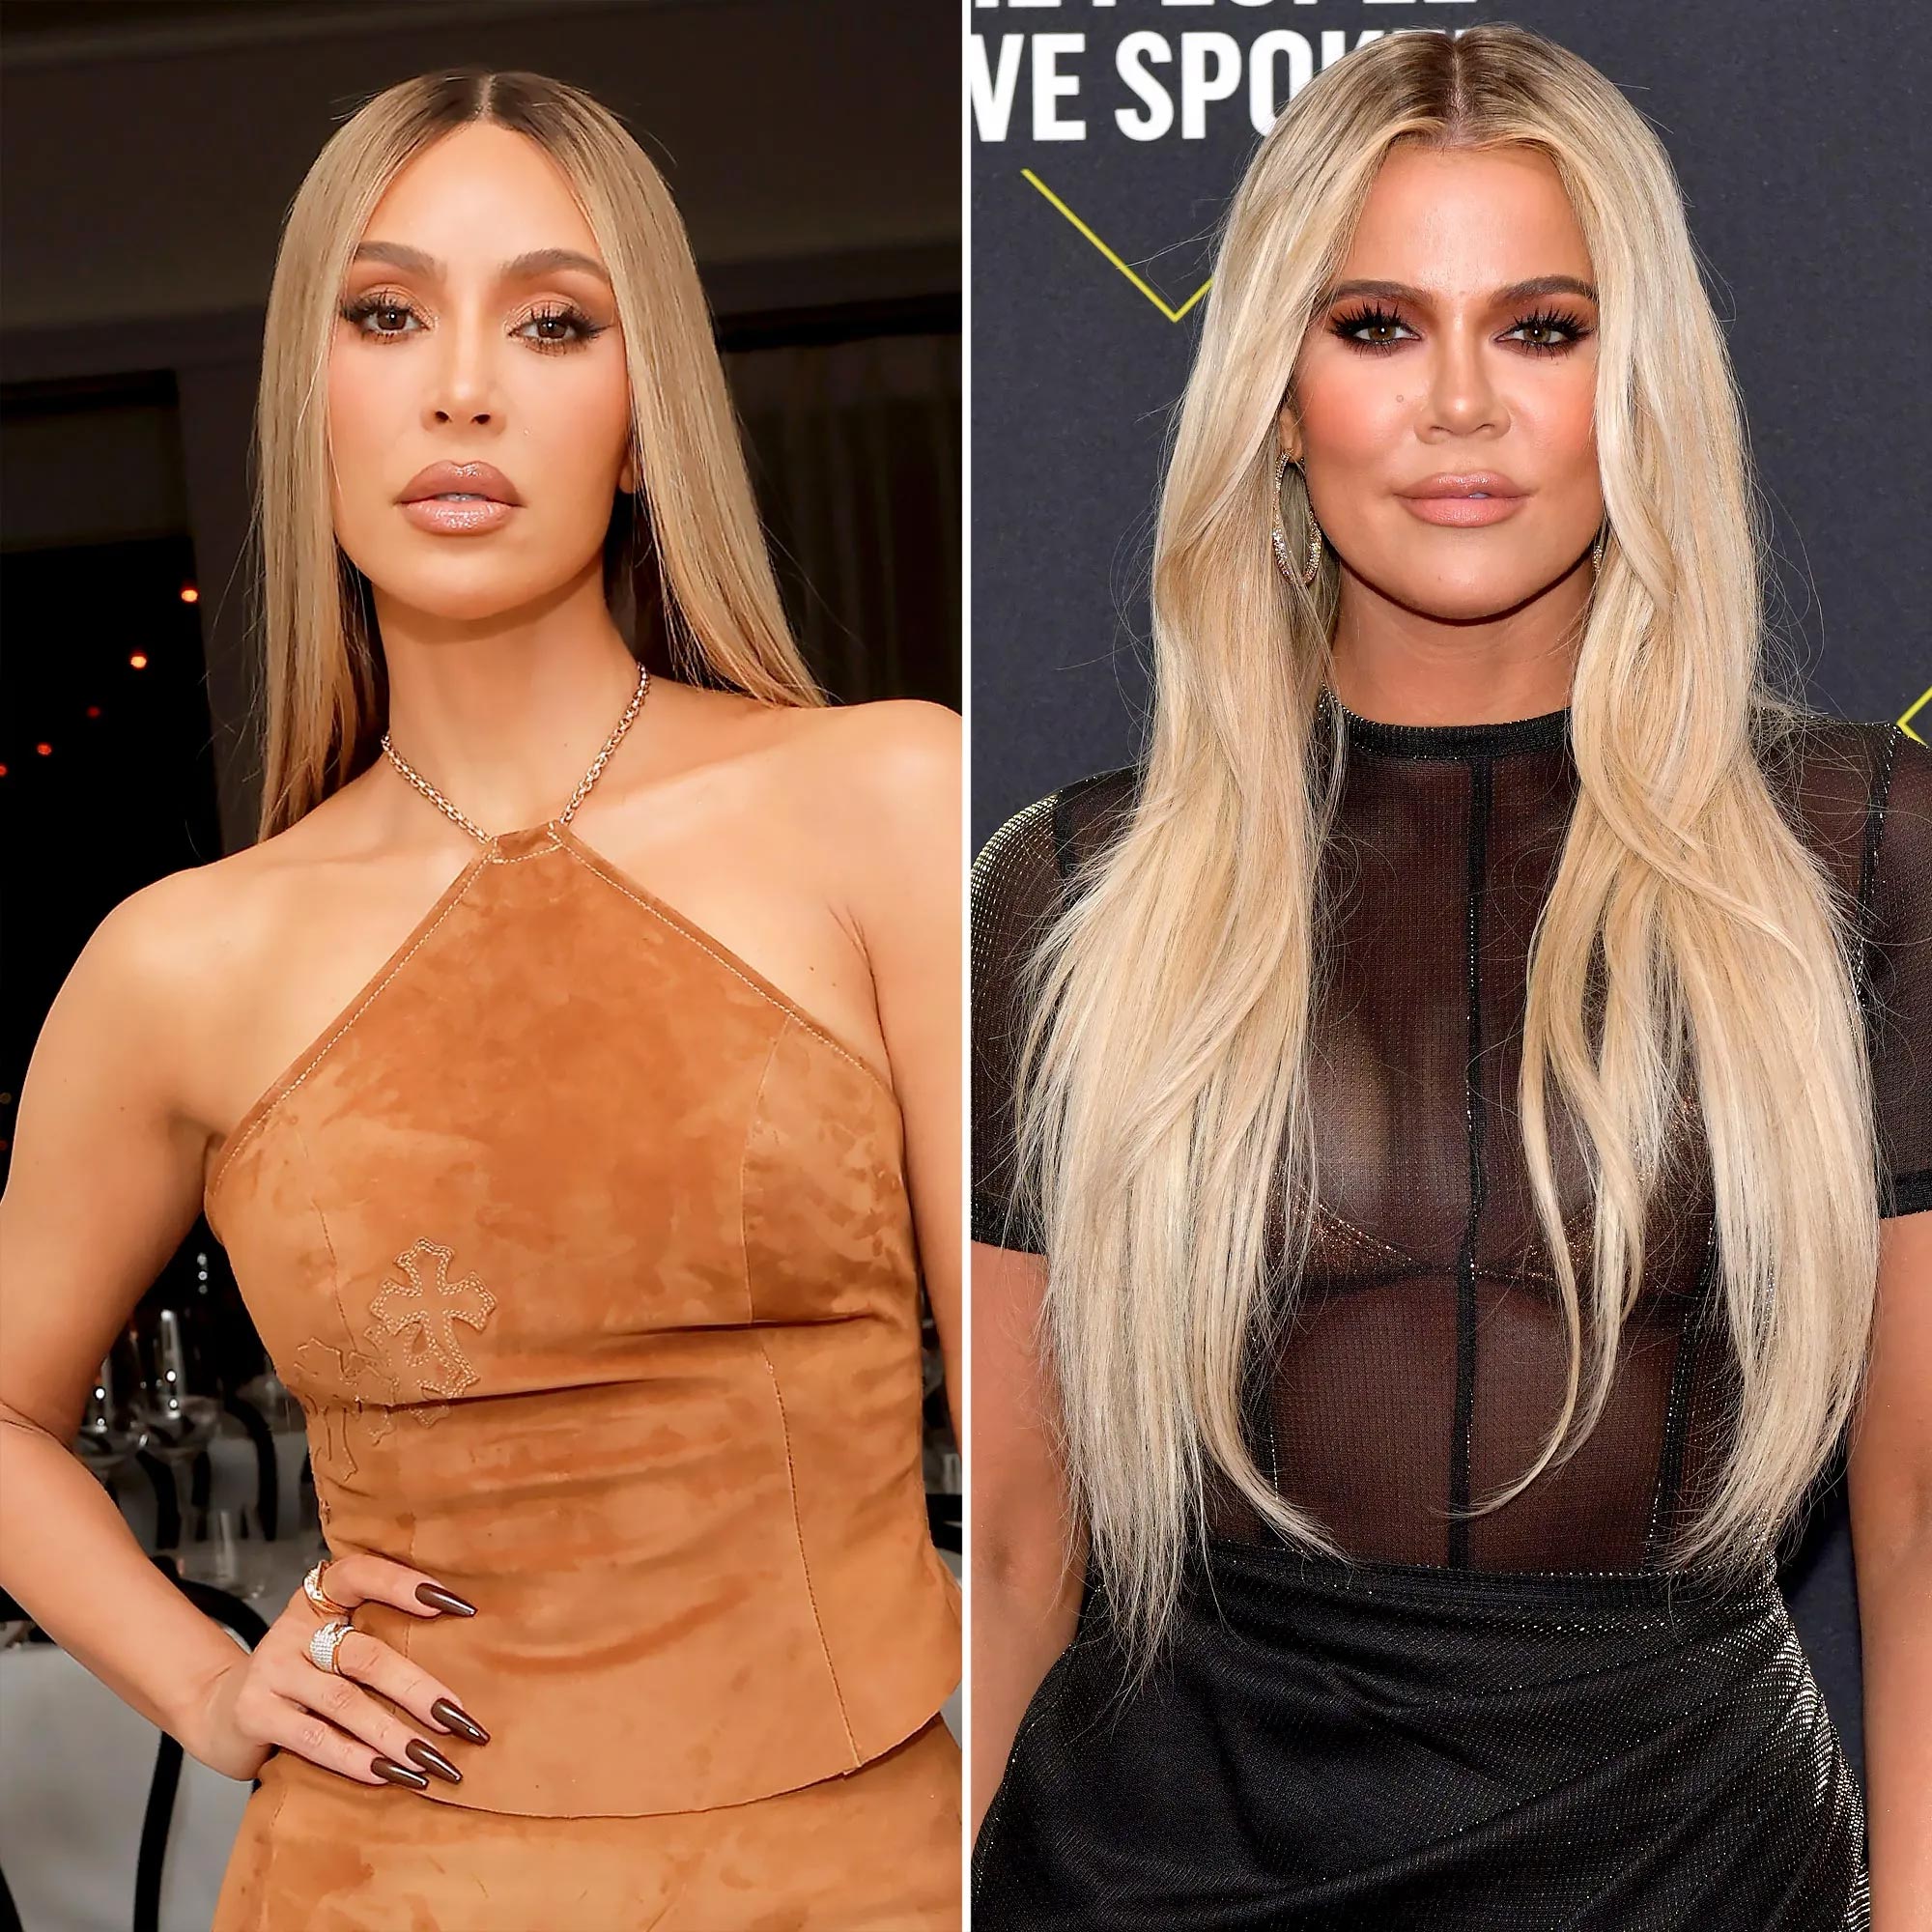 Kim und Khloe Kardashian beschuldigen sich gegenseitig des Mom-Shaming mit zwielichtigen Ausgrabungen